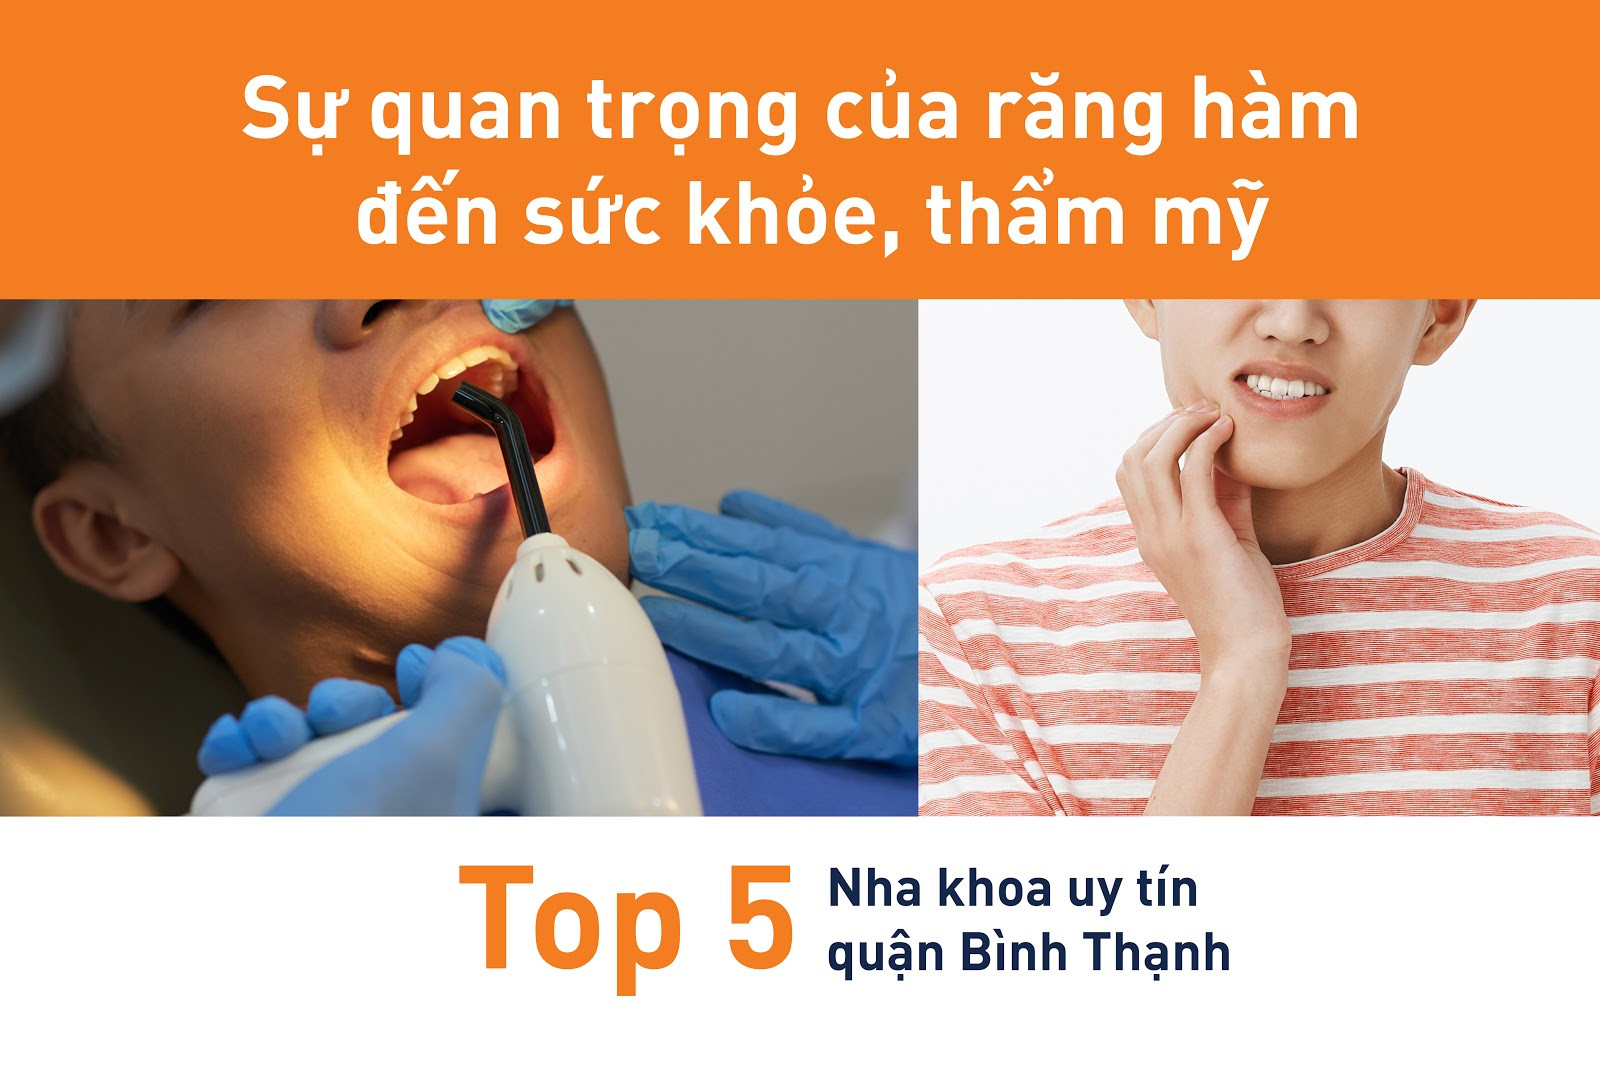 Top 5 nha khoa uy tín quận Bình Thạnh, TP.HCM - 1